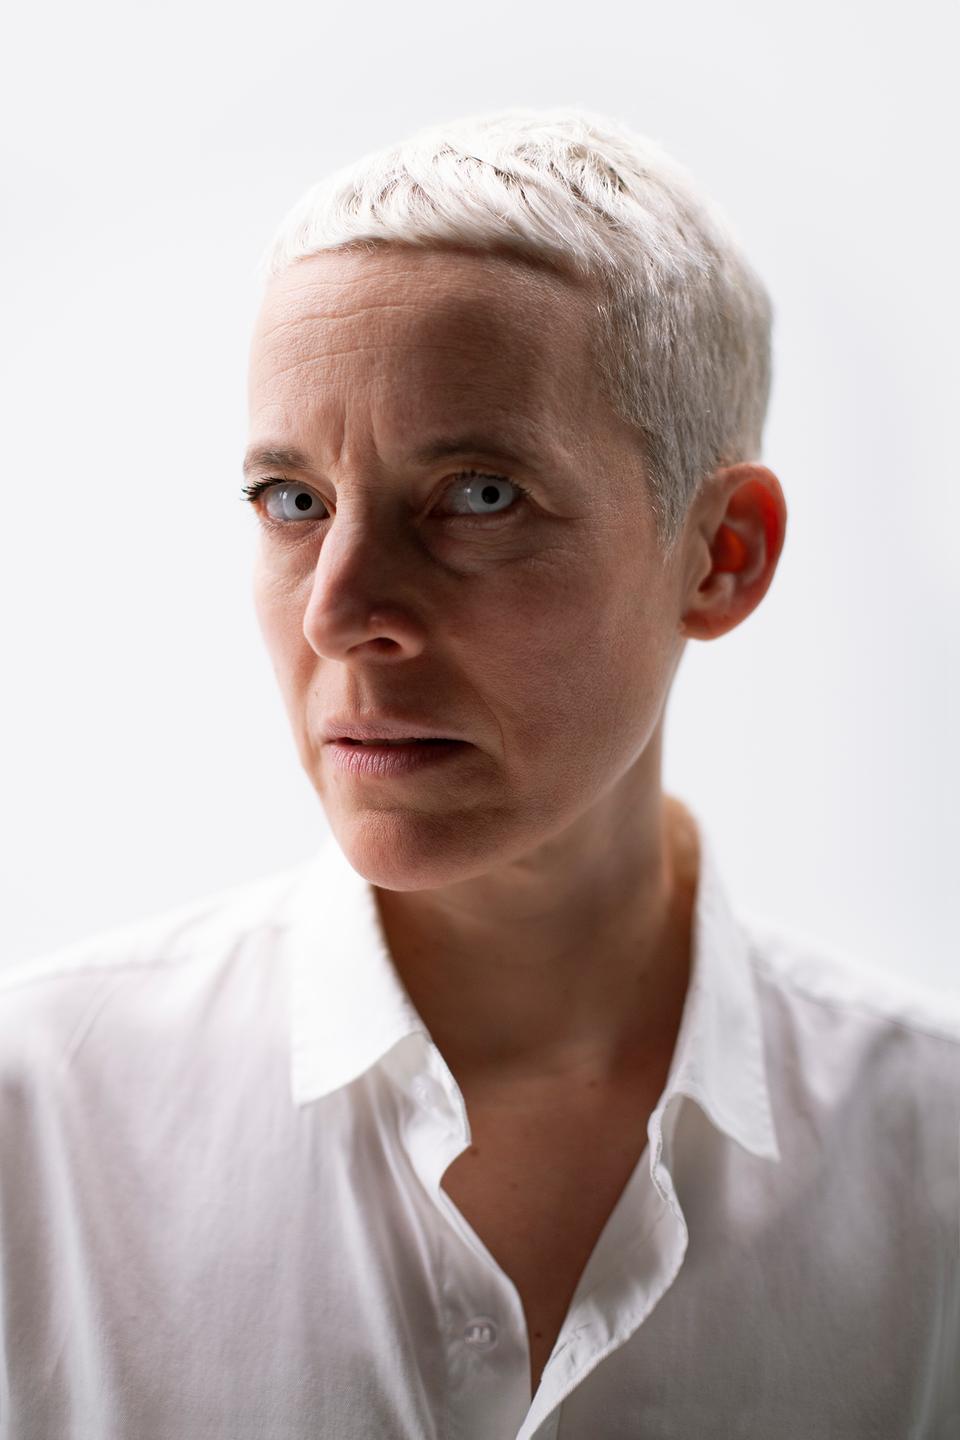 Die Künstlerin Candice Breitz im weißen Hemd mit blondem Kurzhaarschnitt schaut mit wasserhellen Augen frontal in die Kamera.